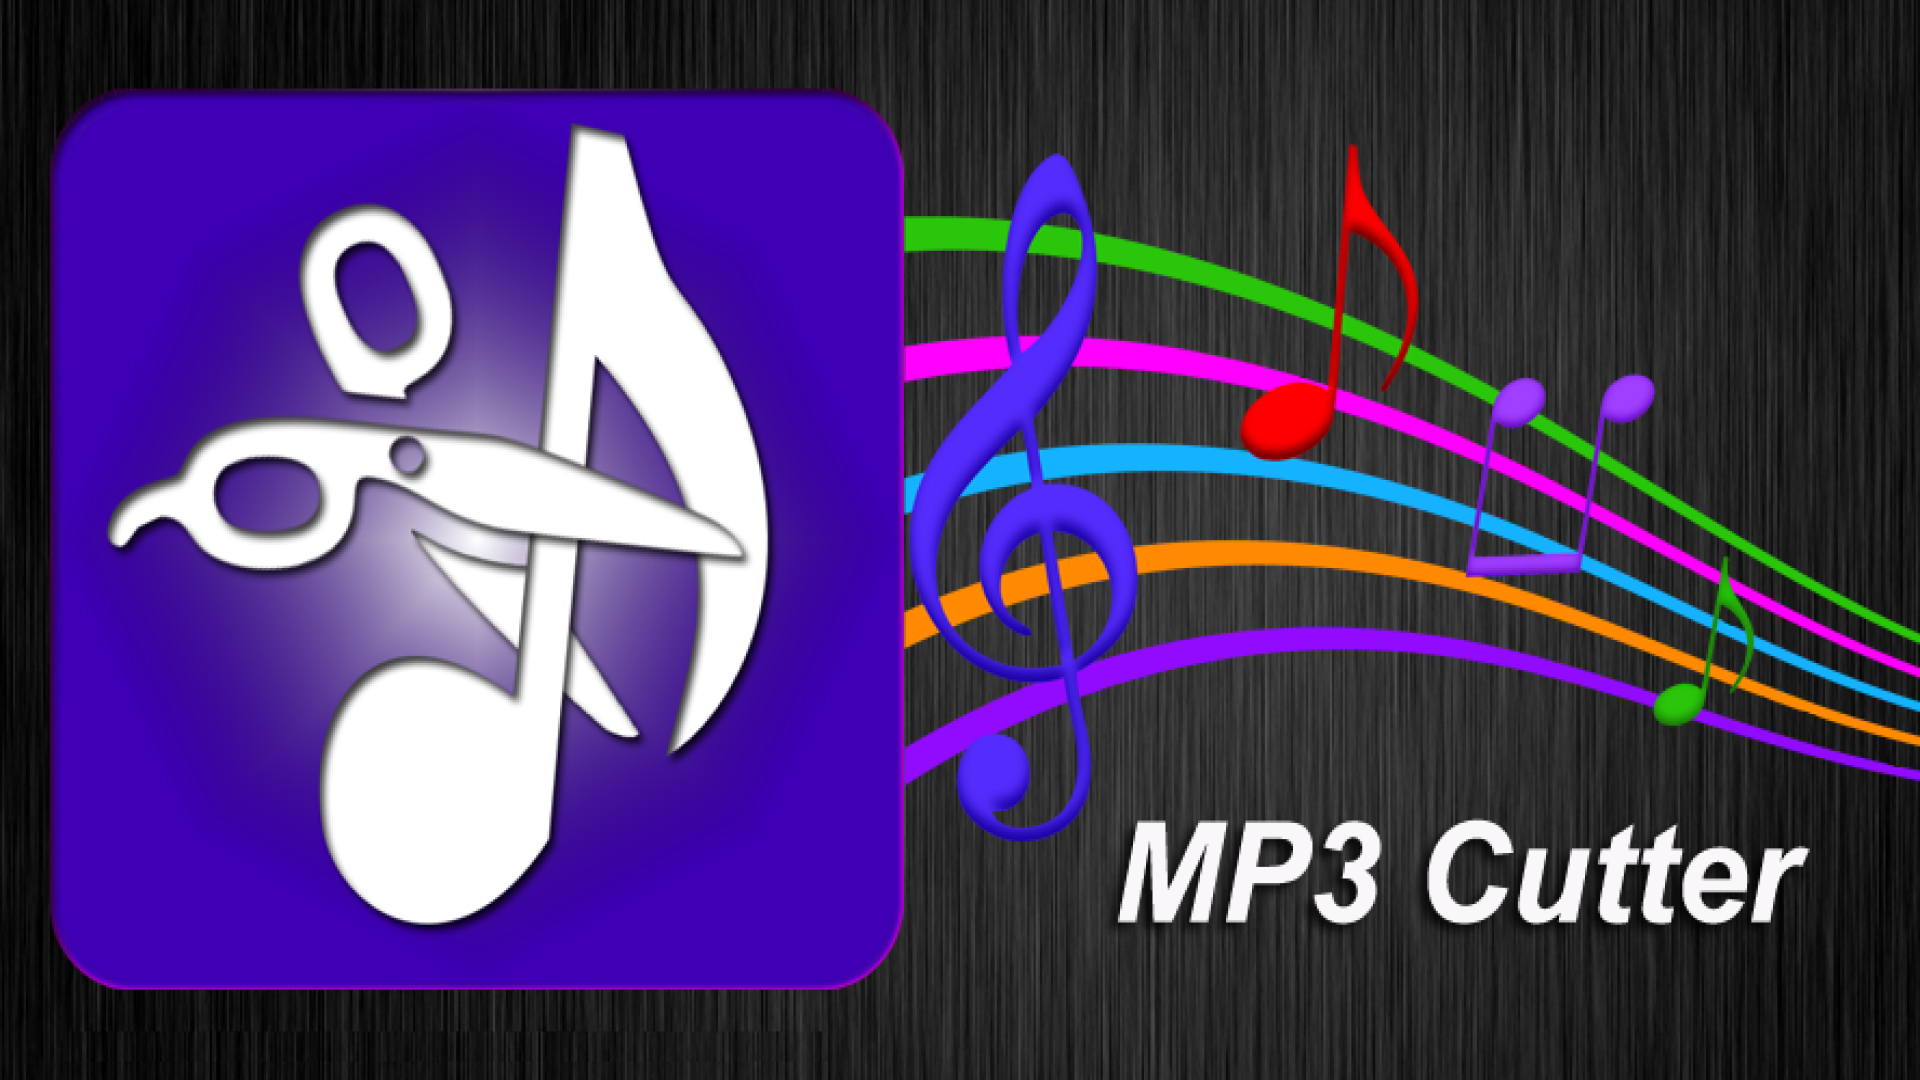 I Migliori 7 Tagliatori MP3 per modificare semplicemente l'audio MP3